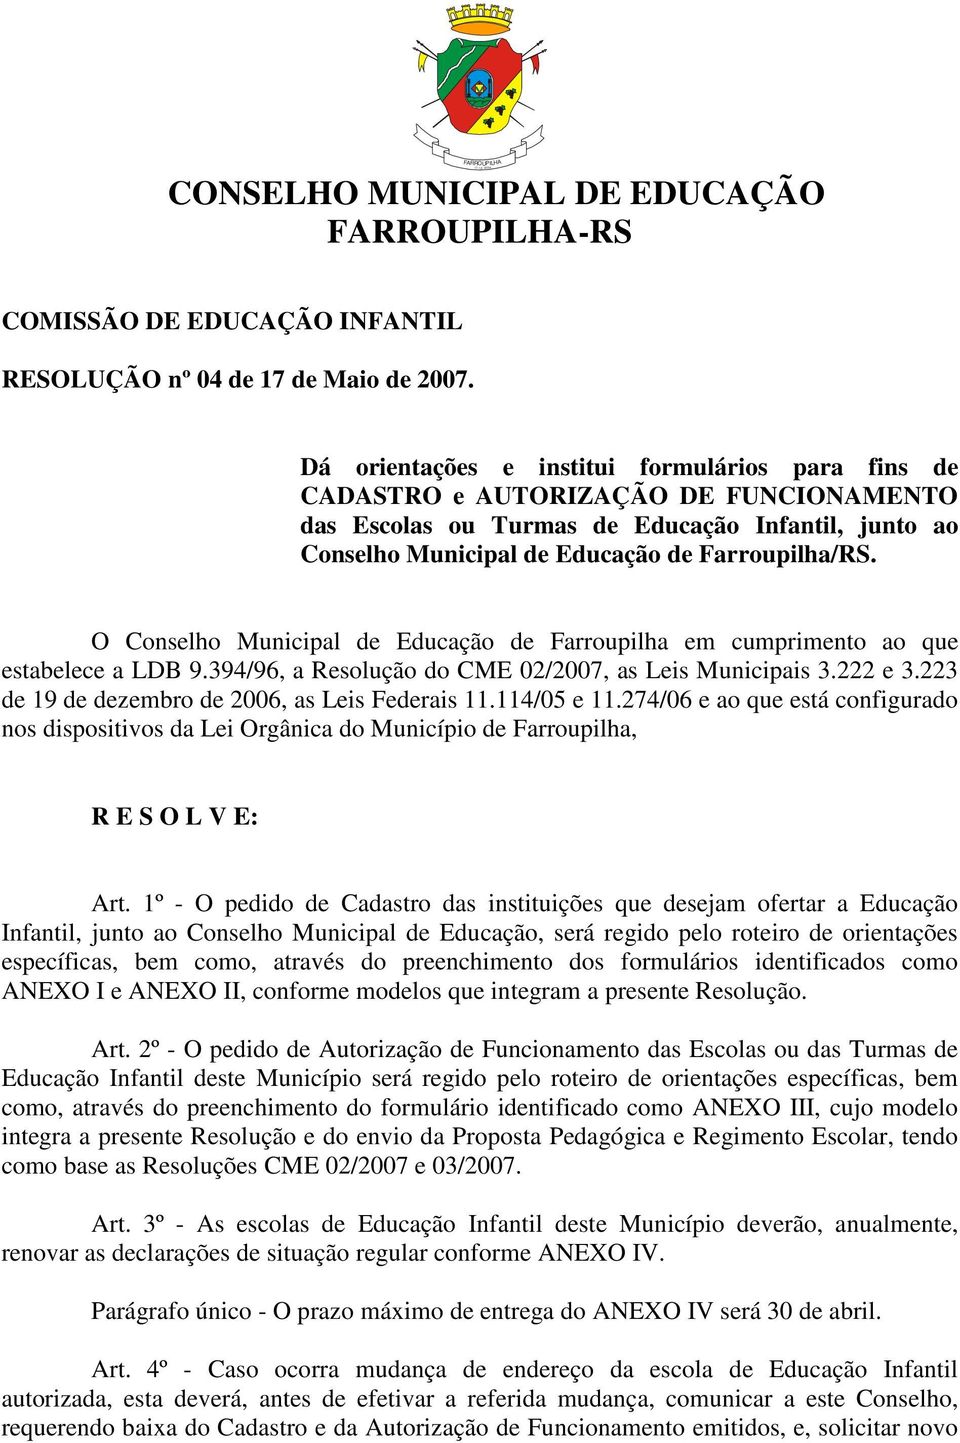 O Conselho Municipal de Educação de Farroupilha em cumprimento ao que estabelece a LDB 9.394/96, a Resolução do CME 02/2007, as Leis Municipais 3.222 e 3.